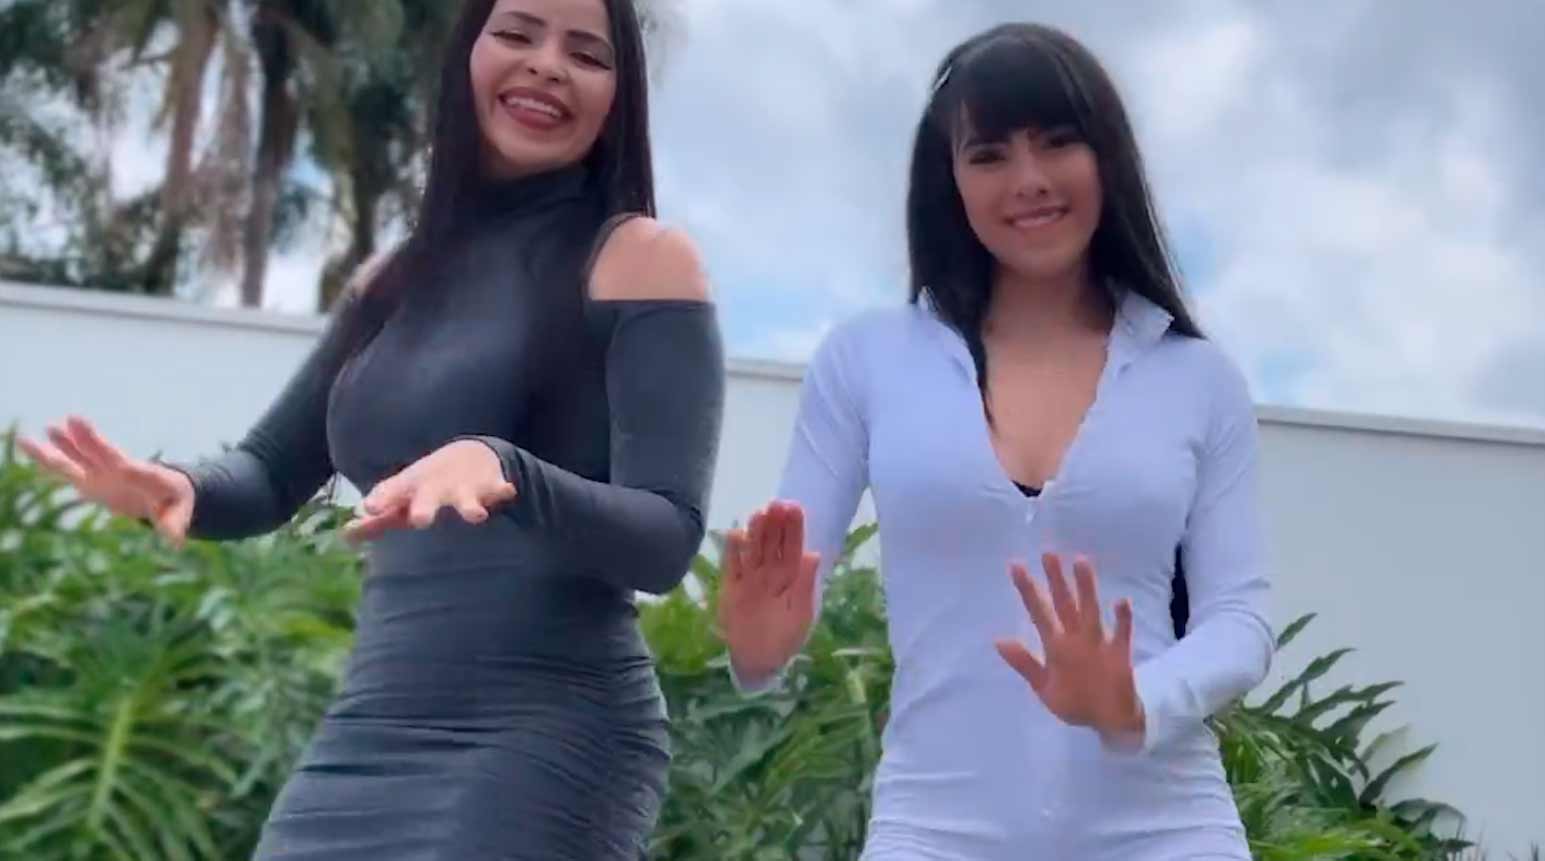 Wideo: Juliana Caetano i Nadila z zespołu Djavu odnoszą sukces dzięki tańcowi na Instagramie. Zdjęcia i Wideo: Reprodukcja Instagram @julianabondecasa